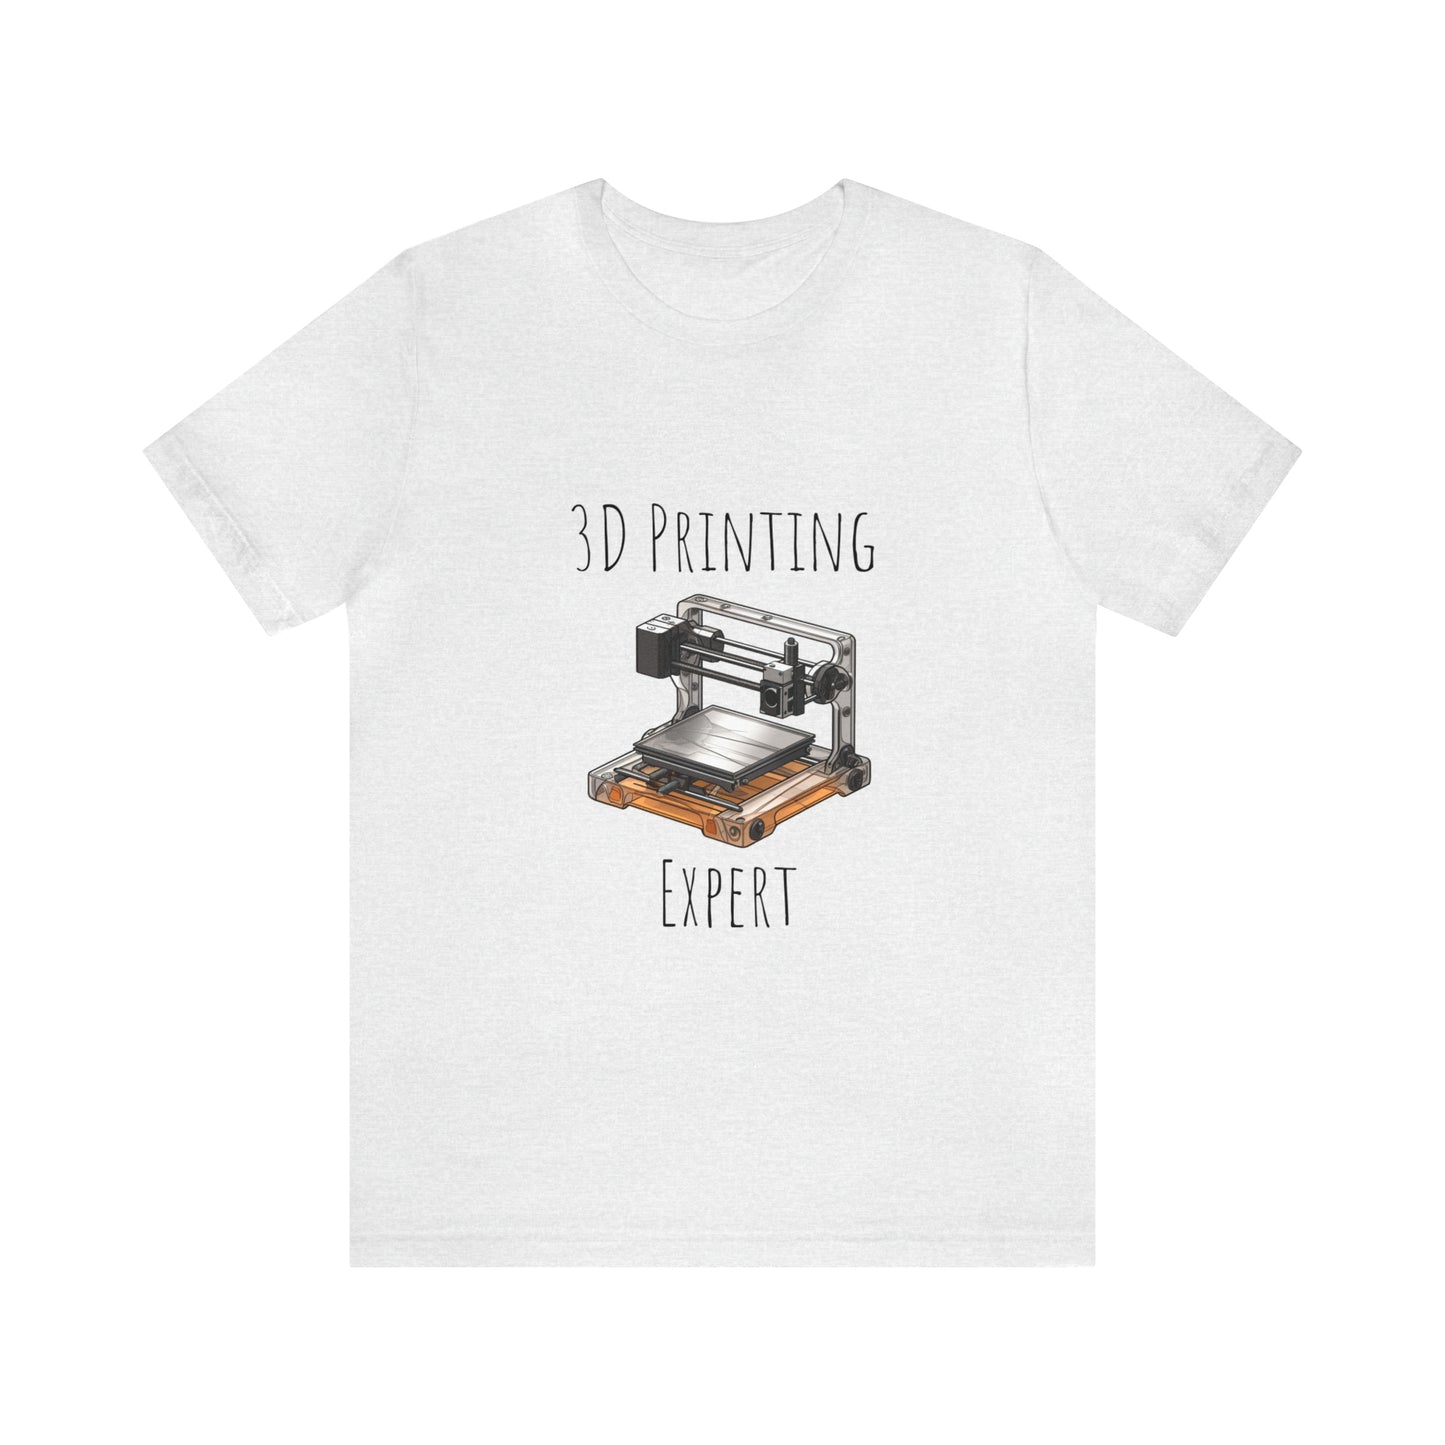 3D Printing Expert Tee Shirt - Tech Lover 3D printing Expert fan Tee Shirt | Expert 3D Printer lover Tee Shirt | Engineer lover tee shirt - CrazyTomTShirts